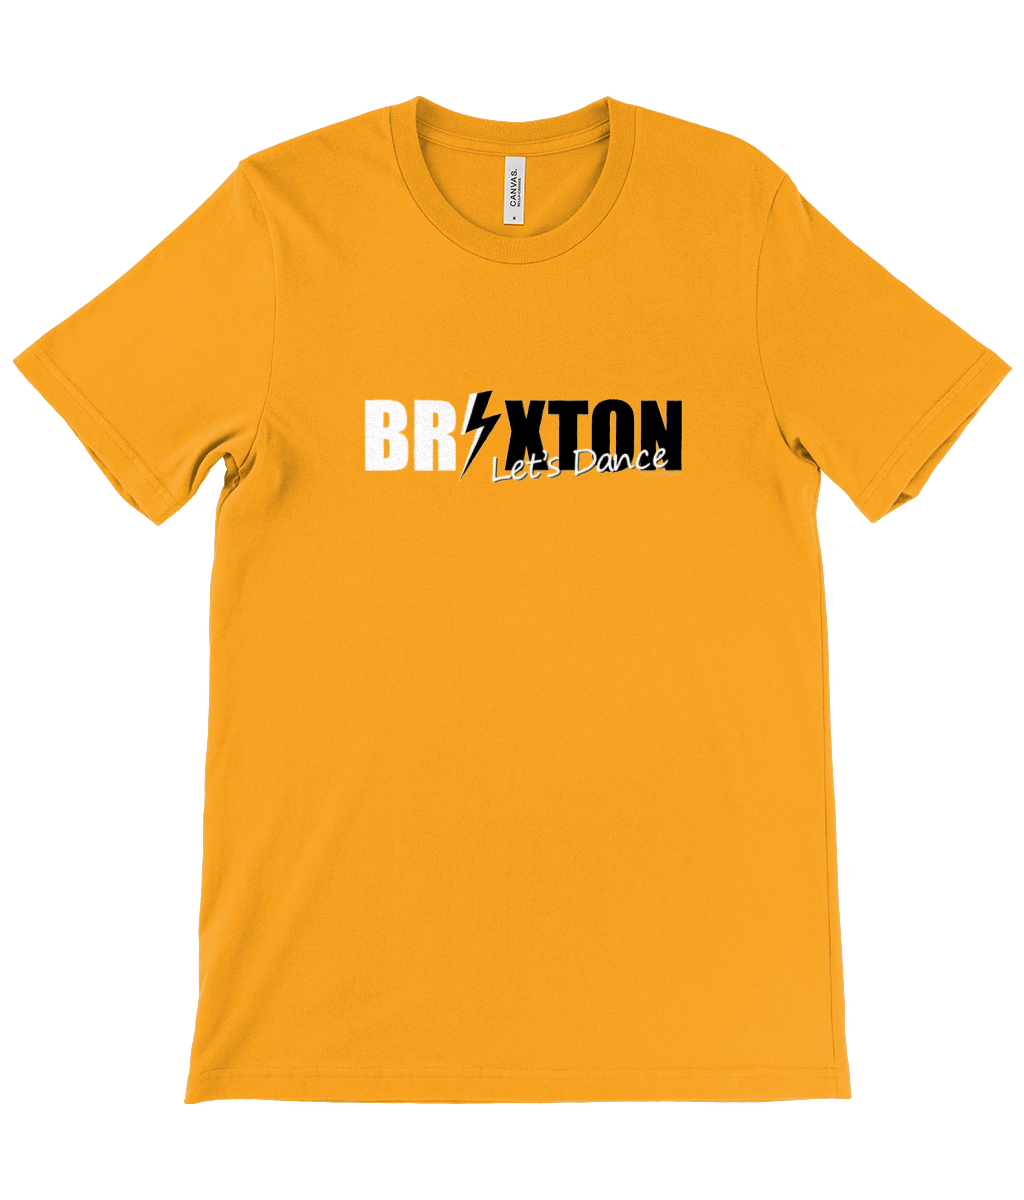 Let's Dance Brixton t-shirt gold